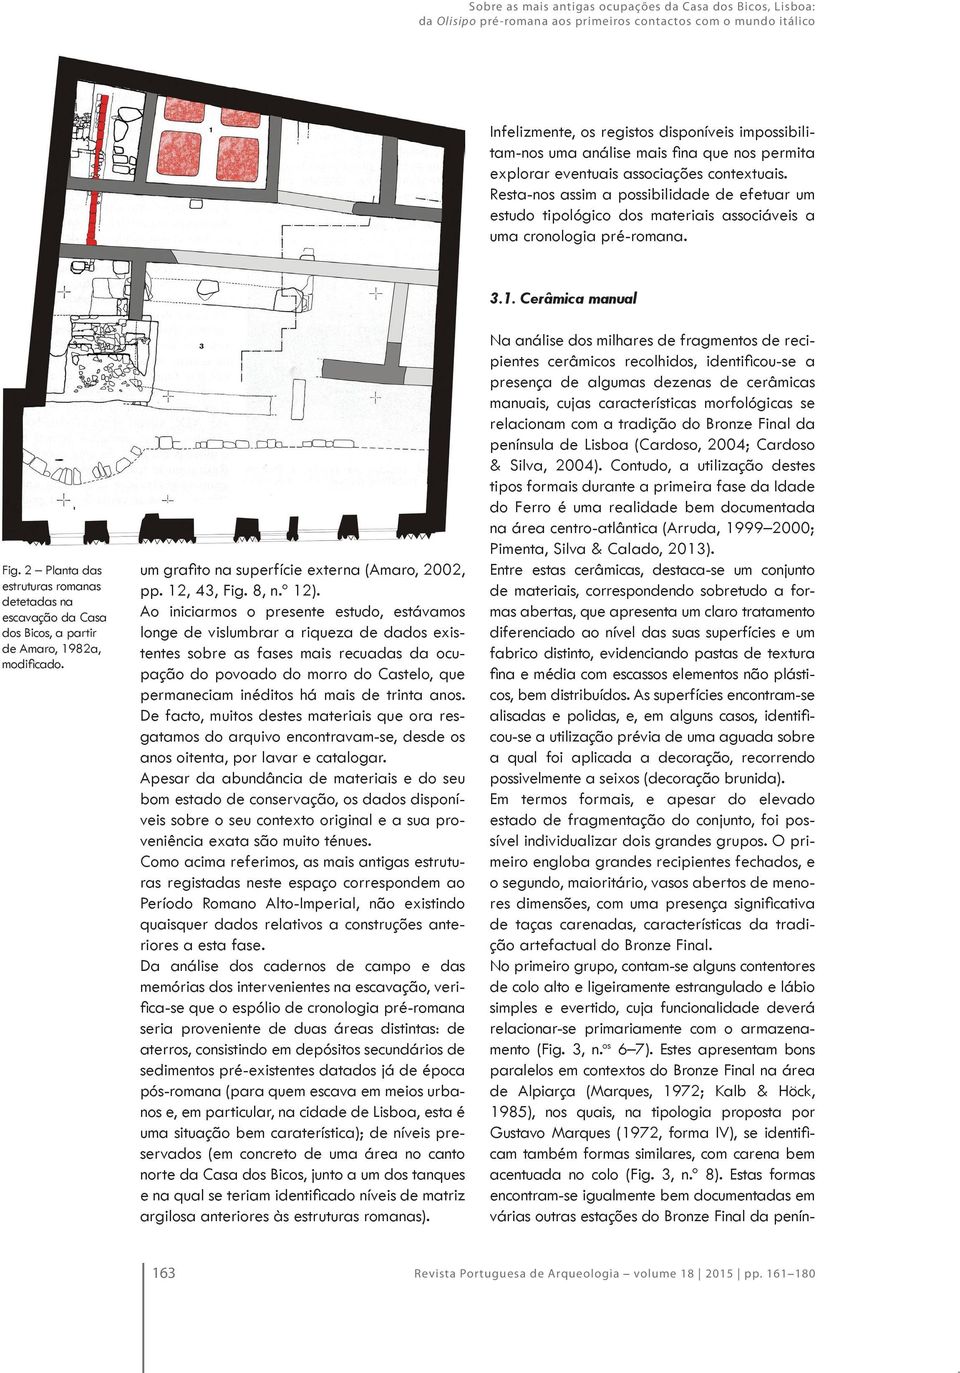 Cerâmica manual Fig. 2 Planta das estruturas romanas detetadas na escavação da Casa dos Bicos, a partir de Amaro, 1982a, modificado. um grafito na superfície externa (Amaro, 2002, pp. 12, 43, Fig.